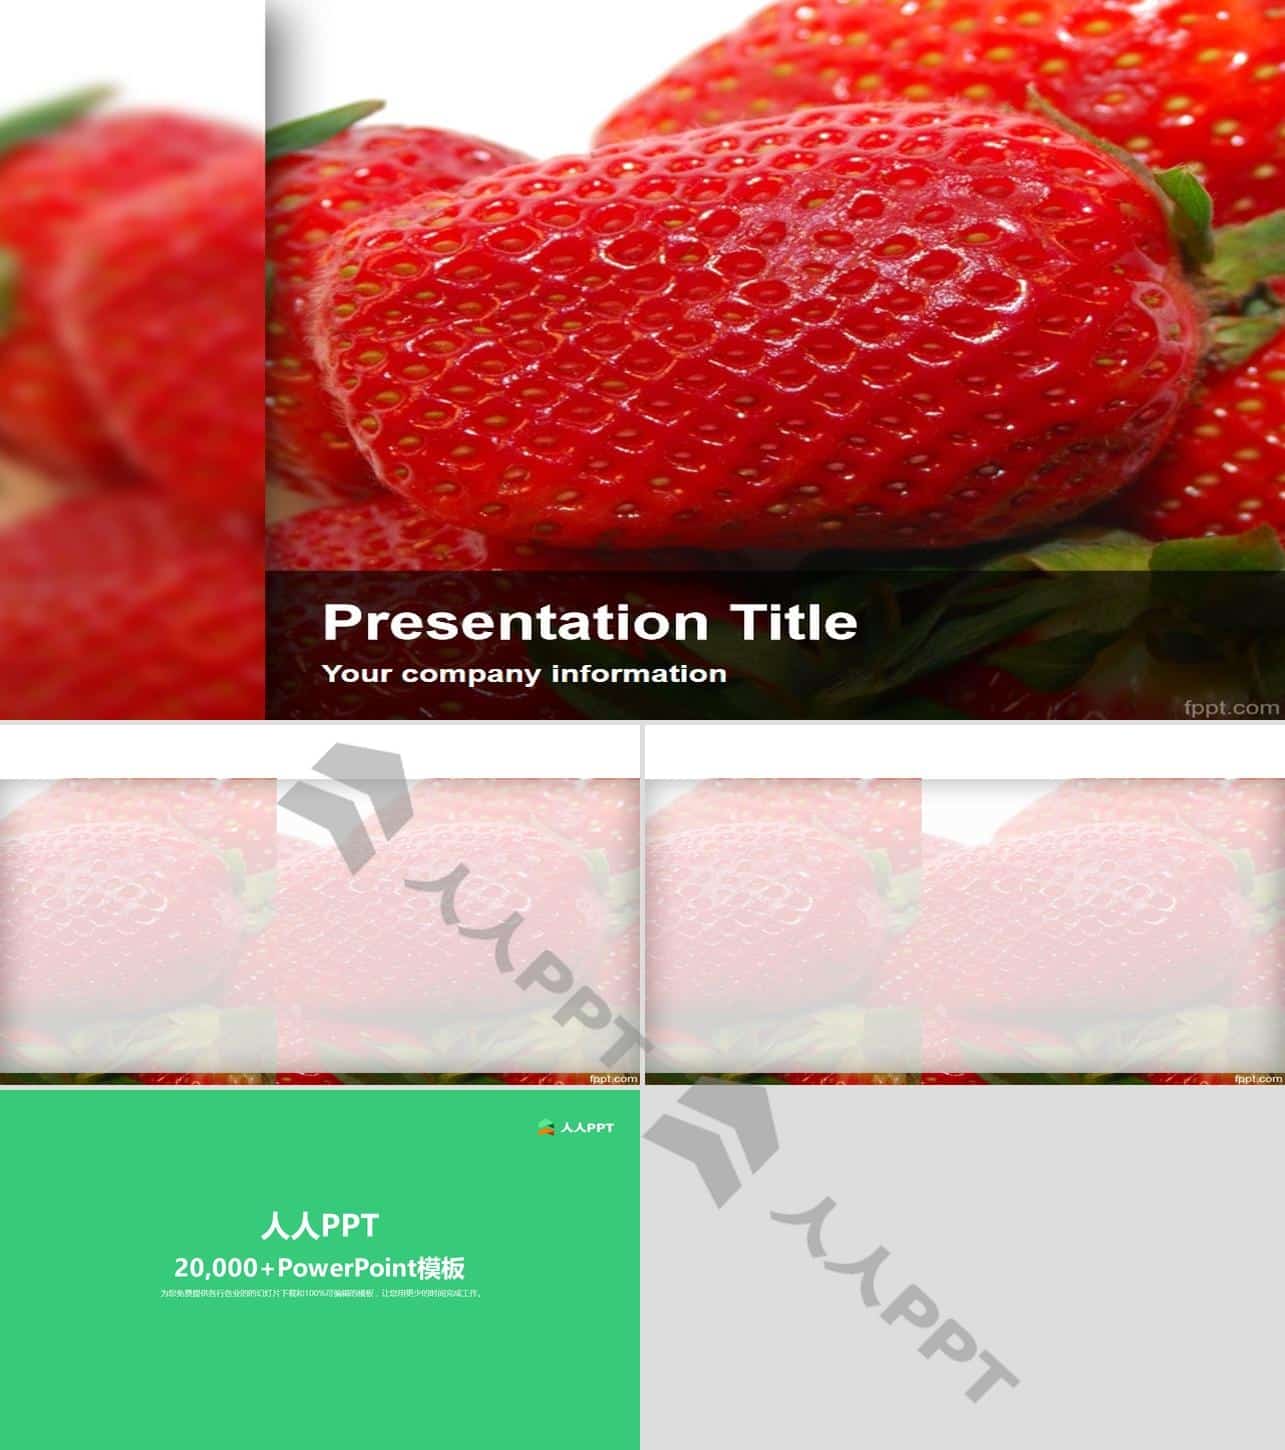 高清草莓水果PPT模板长图